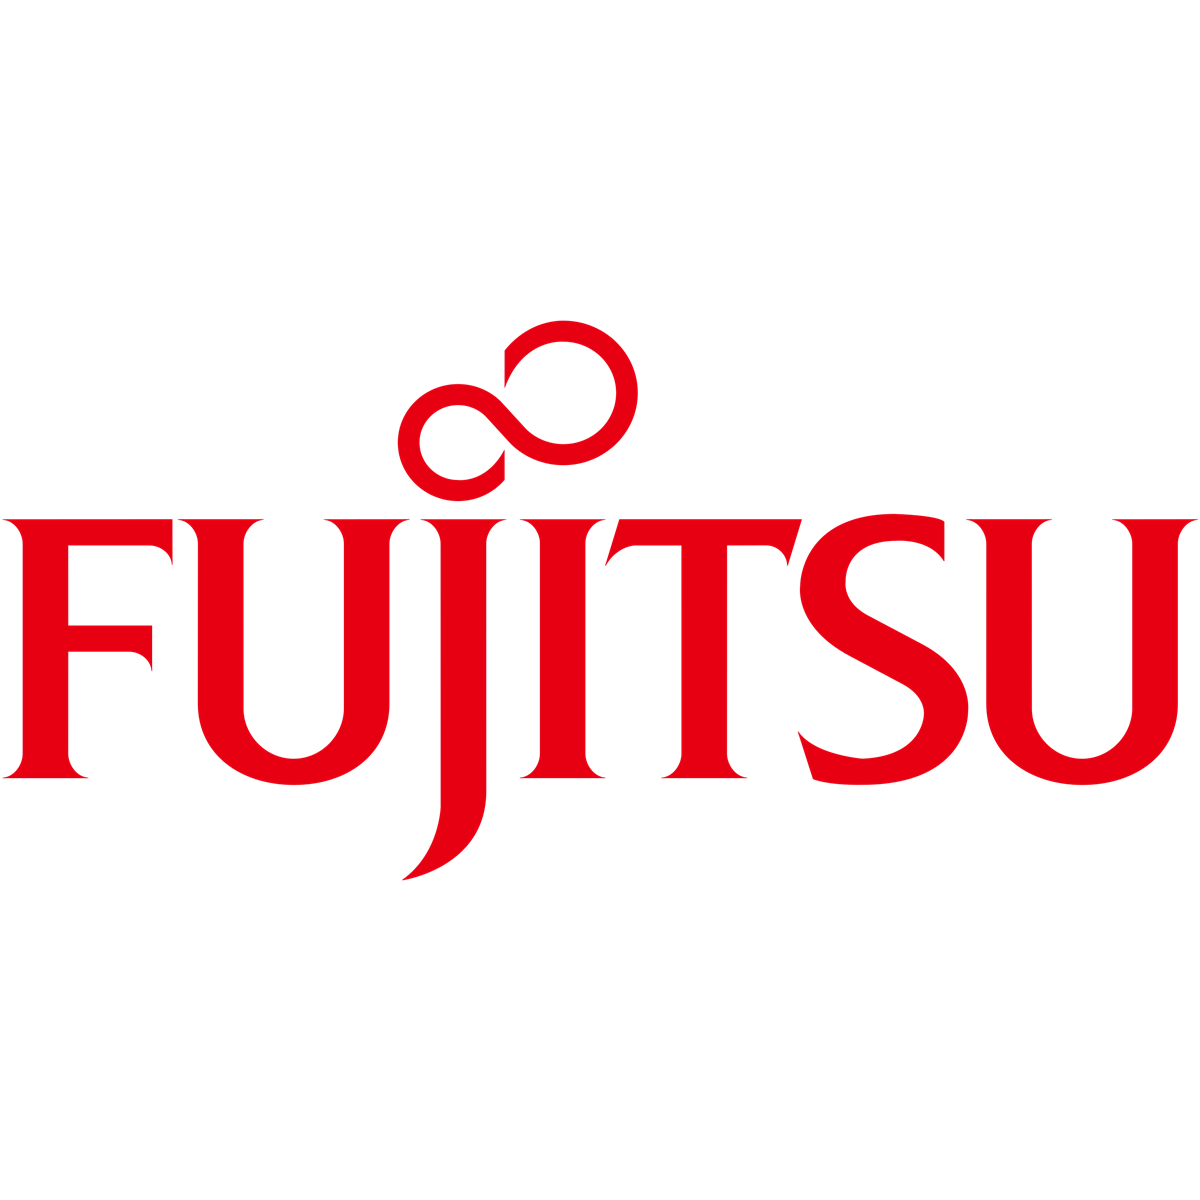 Fujitsu Cooler Kit for 2nd CPU